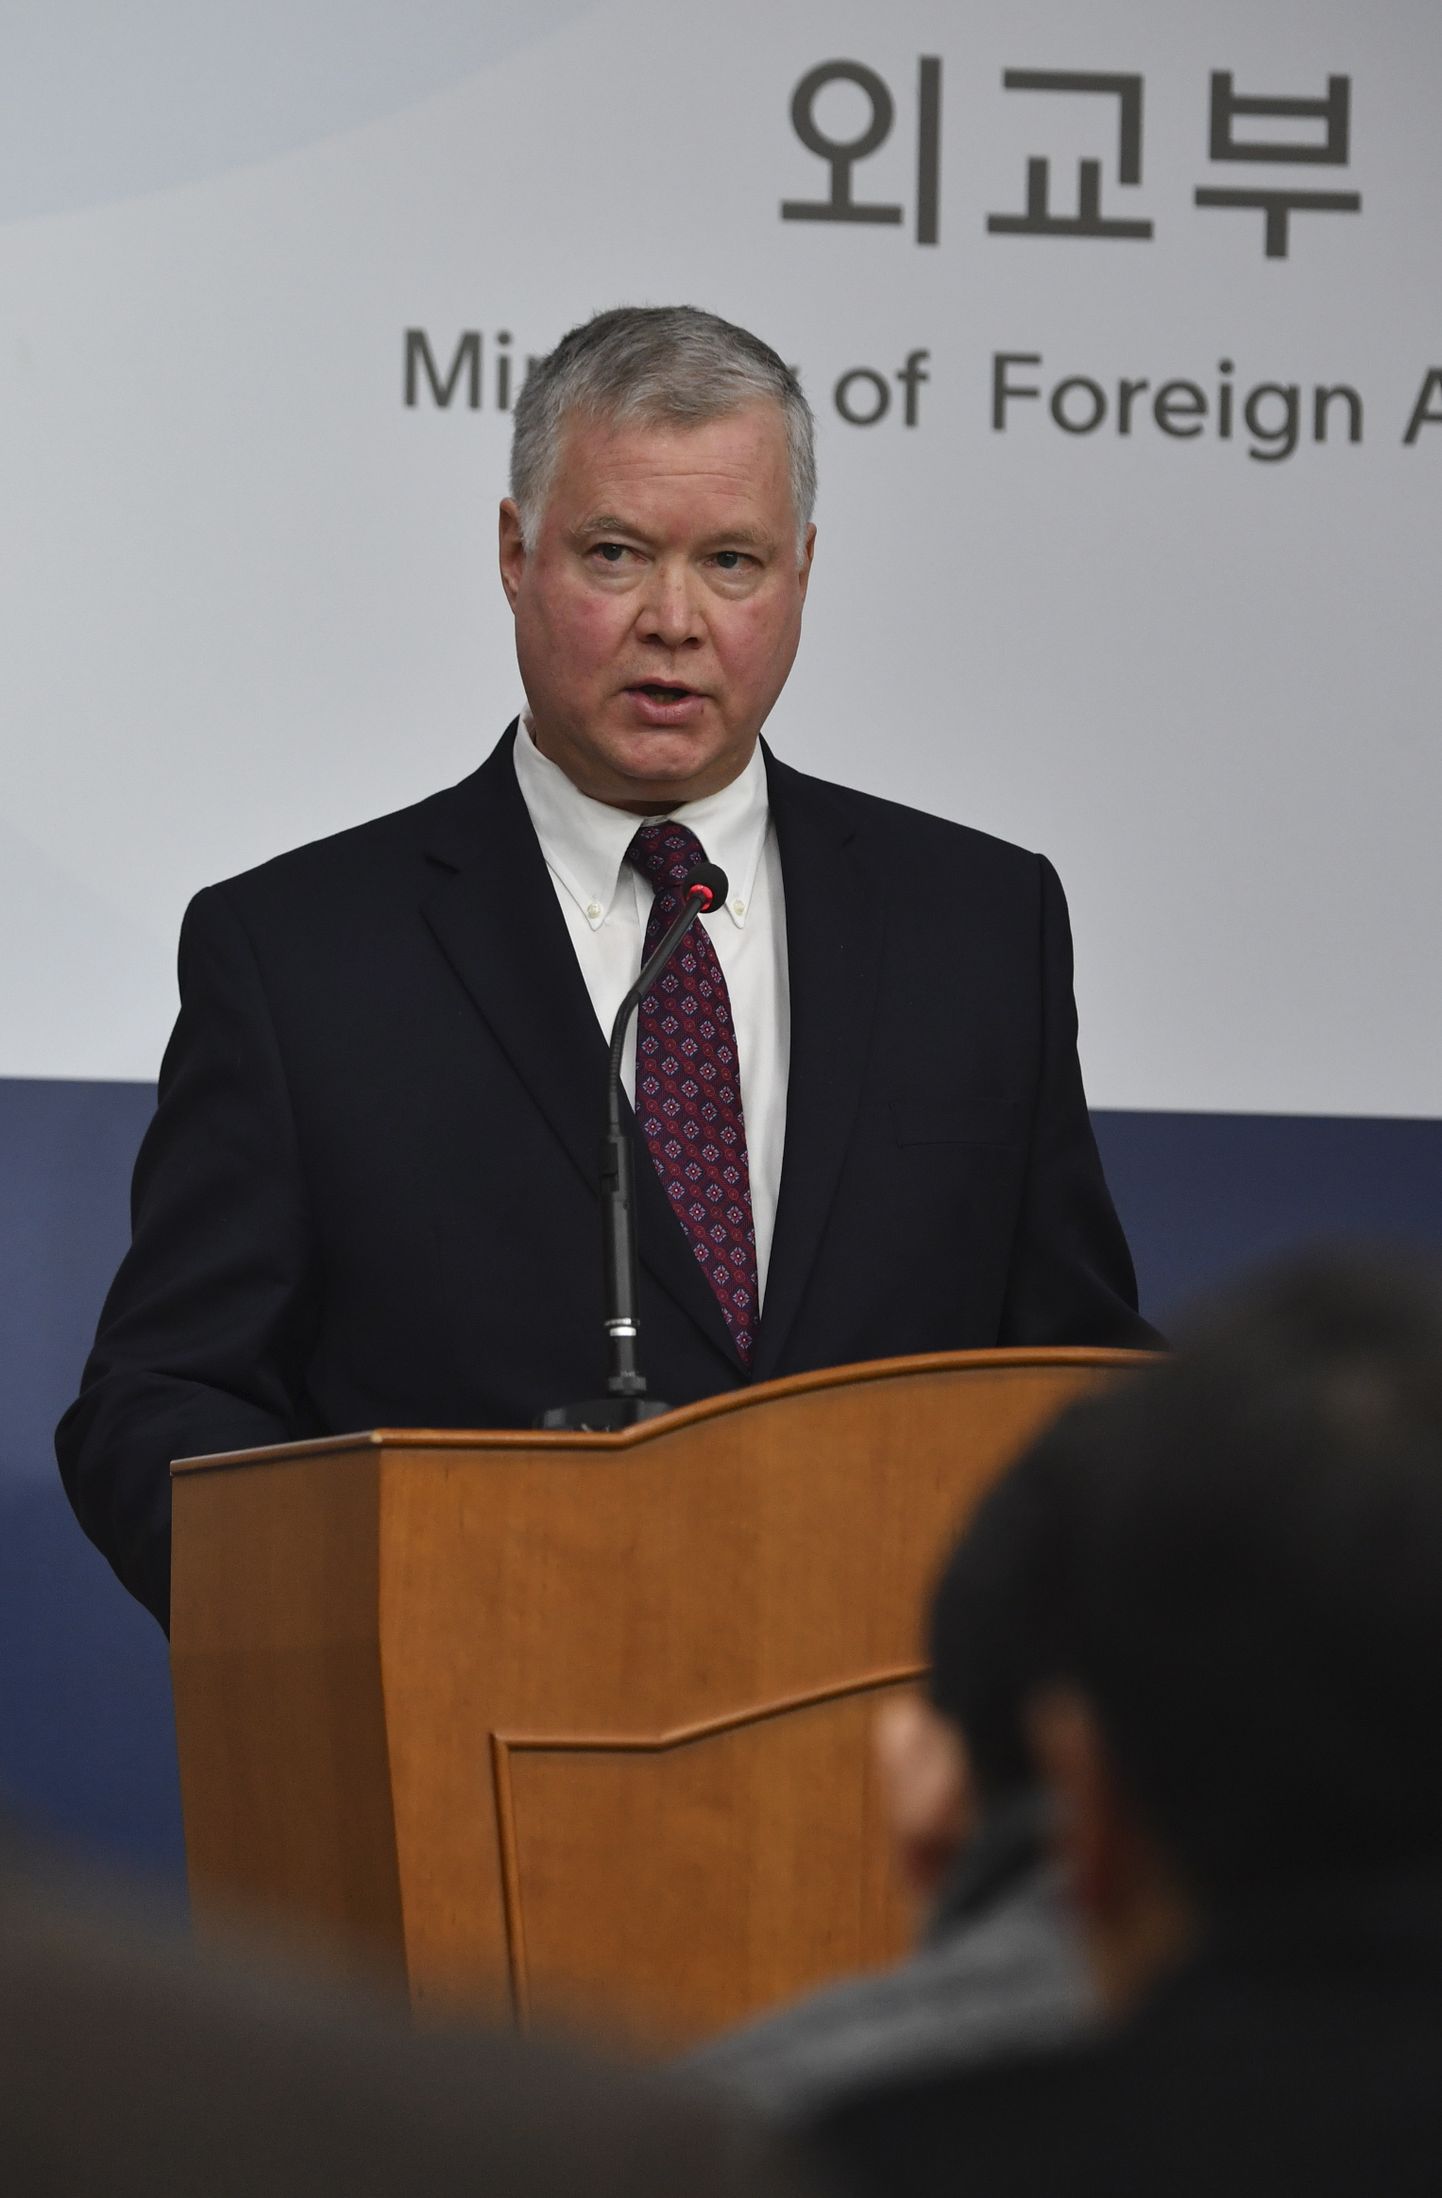 USA Põhja-Korea eriesindaja Stephen Biegun esmaspäeval Soulis Lõuna-Korea välisministeeriumis.